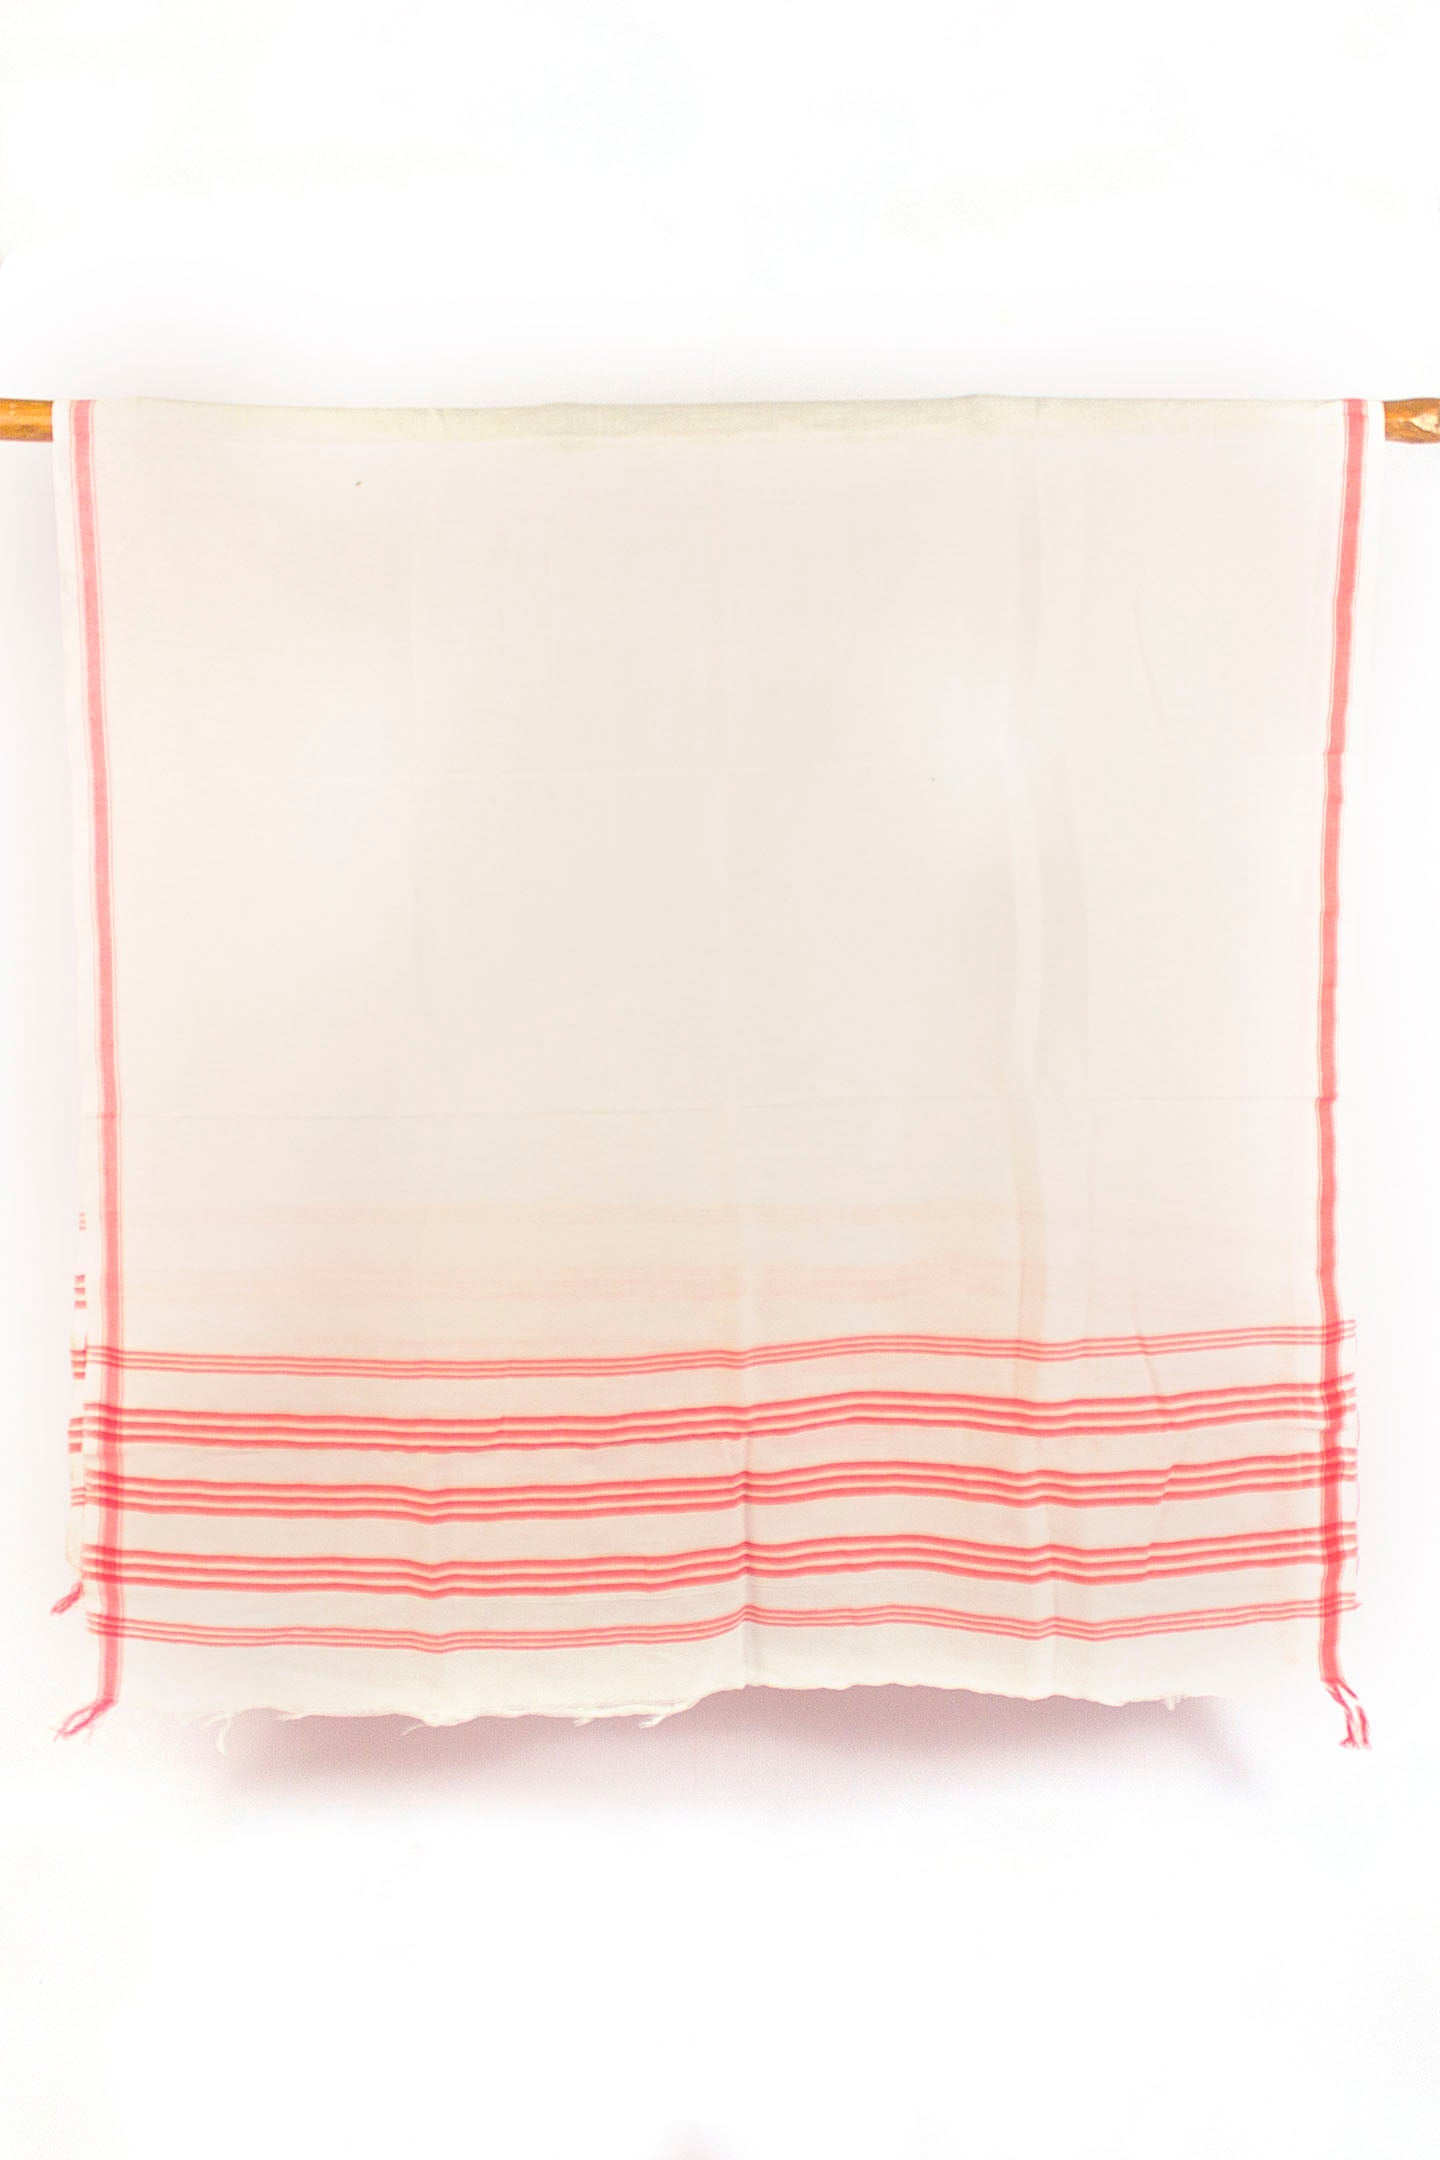 Cotton Gamusa Towel Blight Red Stripe